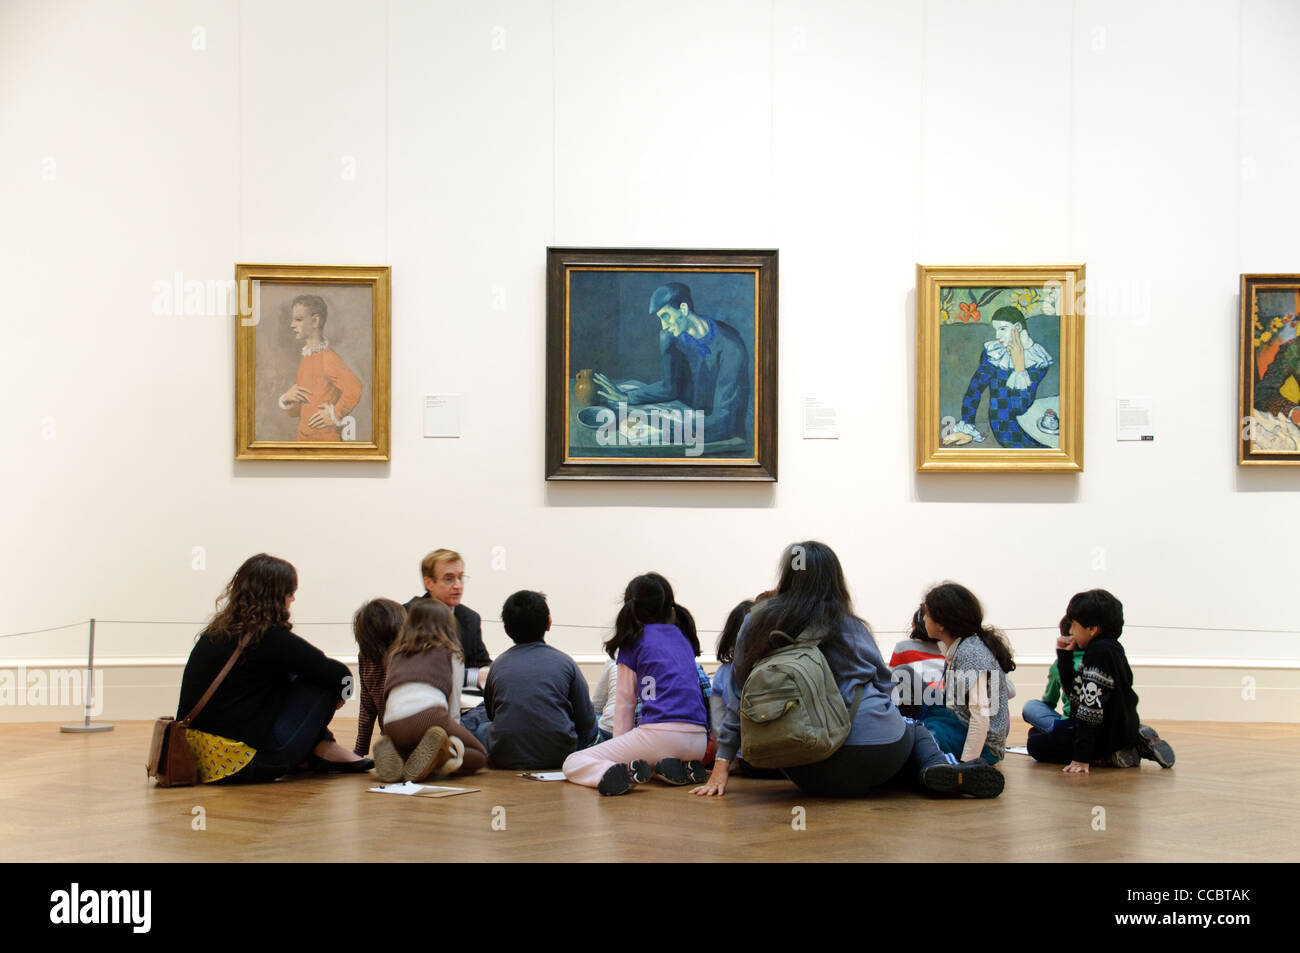 Les enfants de l'école élémentaire pendant une excursion scolaire, Pablo Picasso peintures, Metropolitan Museum of Art, New York City Banque D'Images